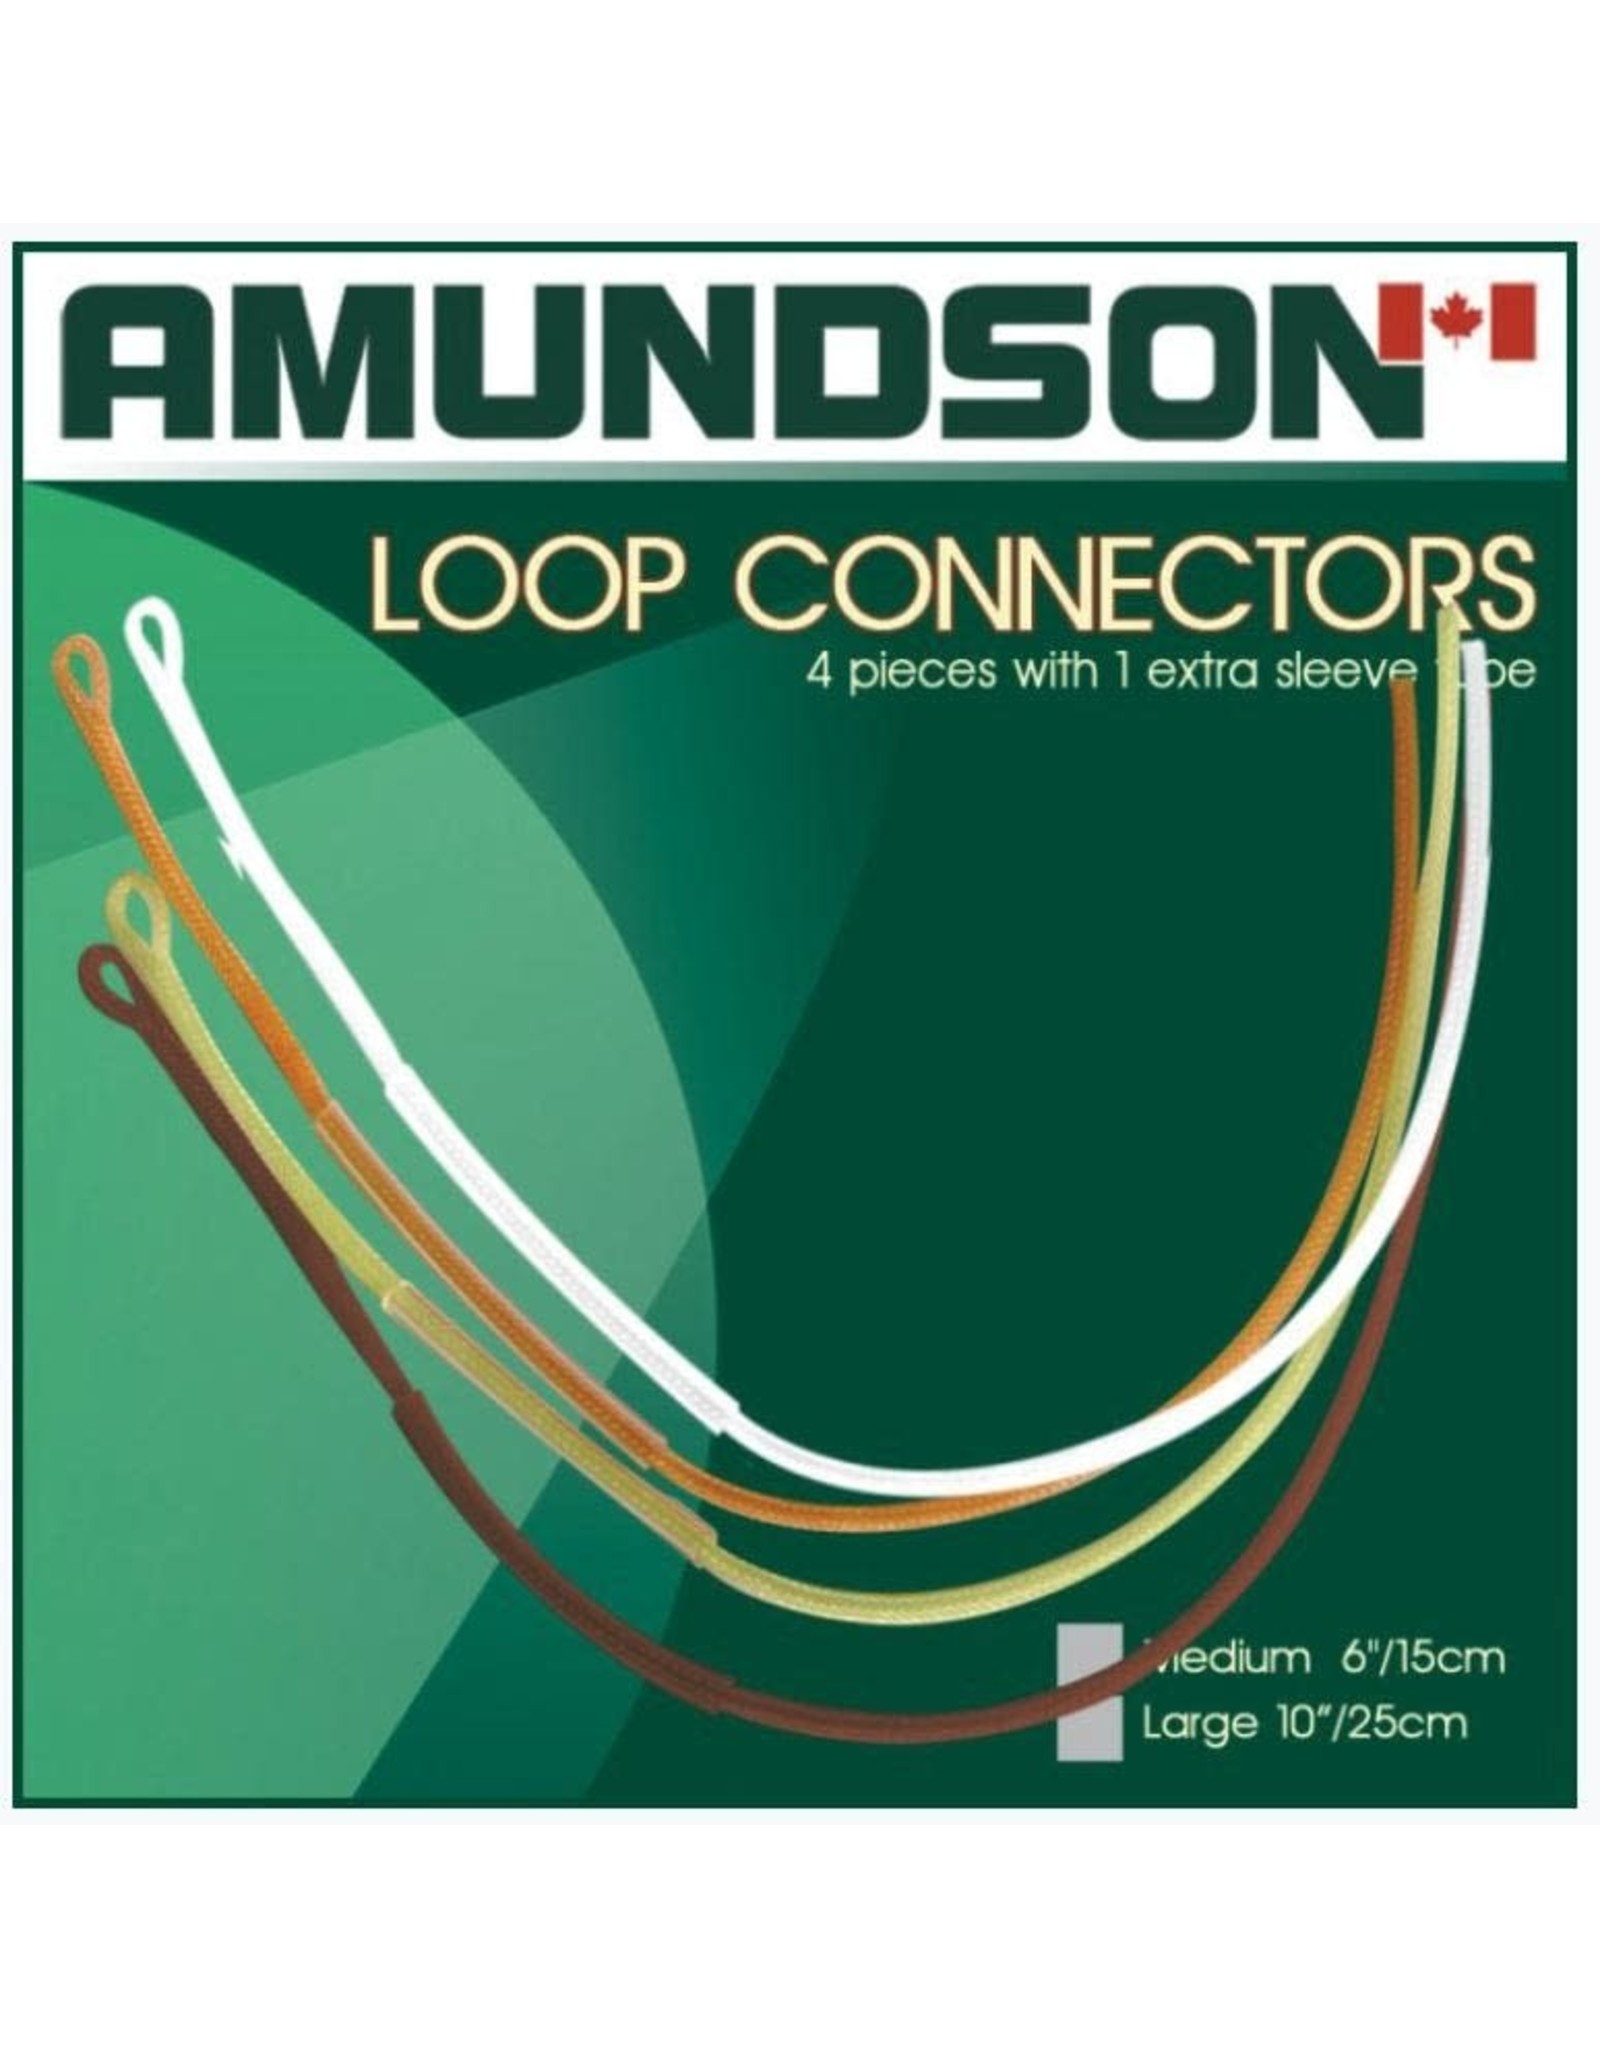 AMUNDSON AMUND LOOP CONNECTORS